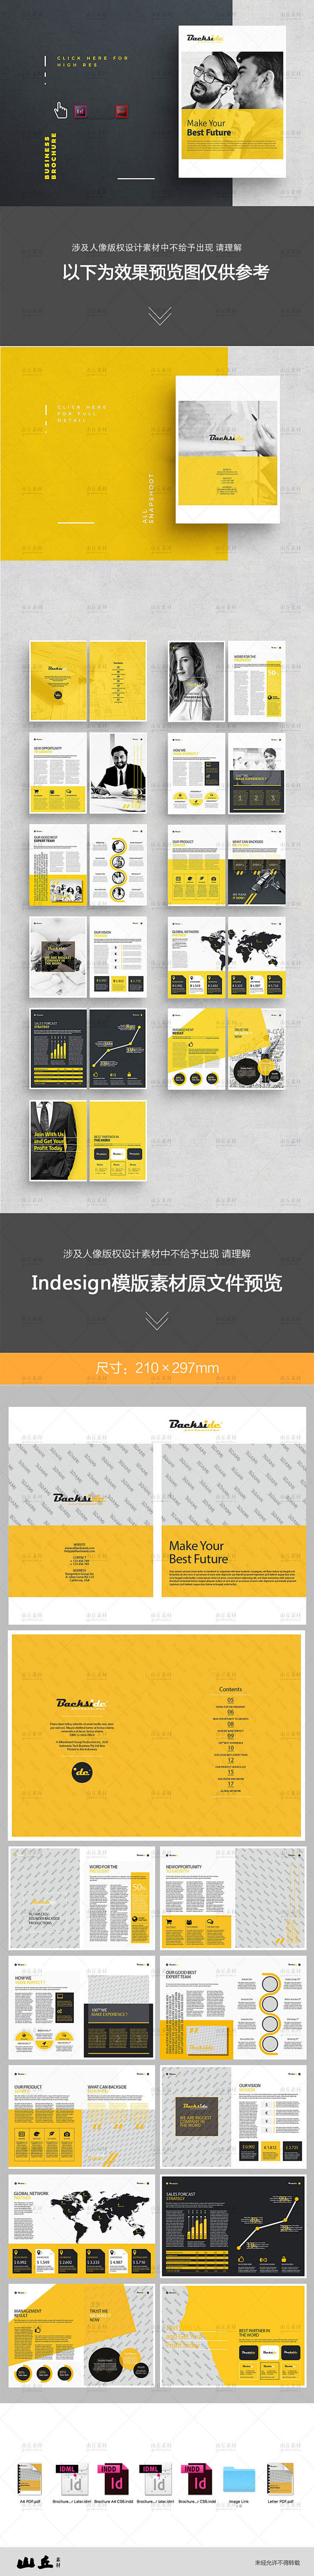 欧美商业企业年度报告会刊indesign编辑排版设计id模版素材d98